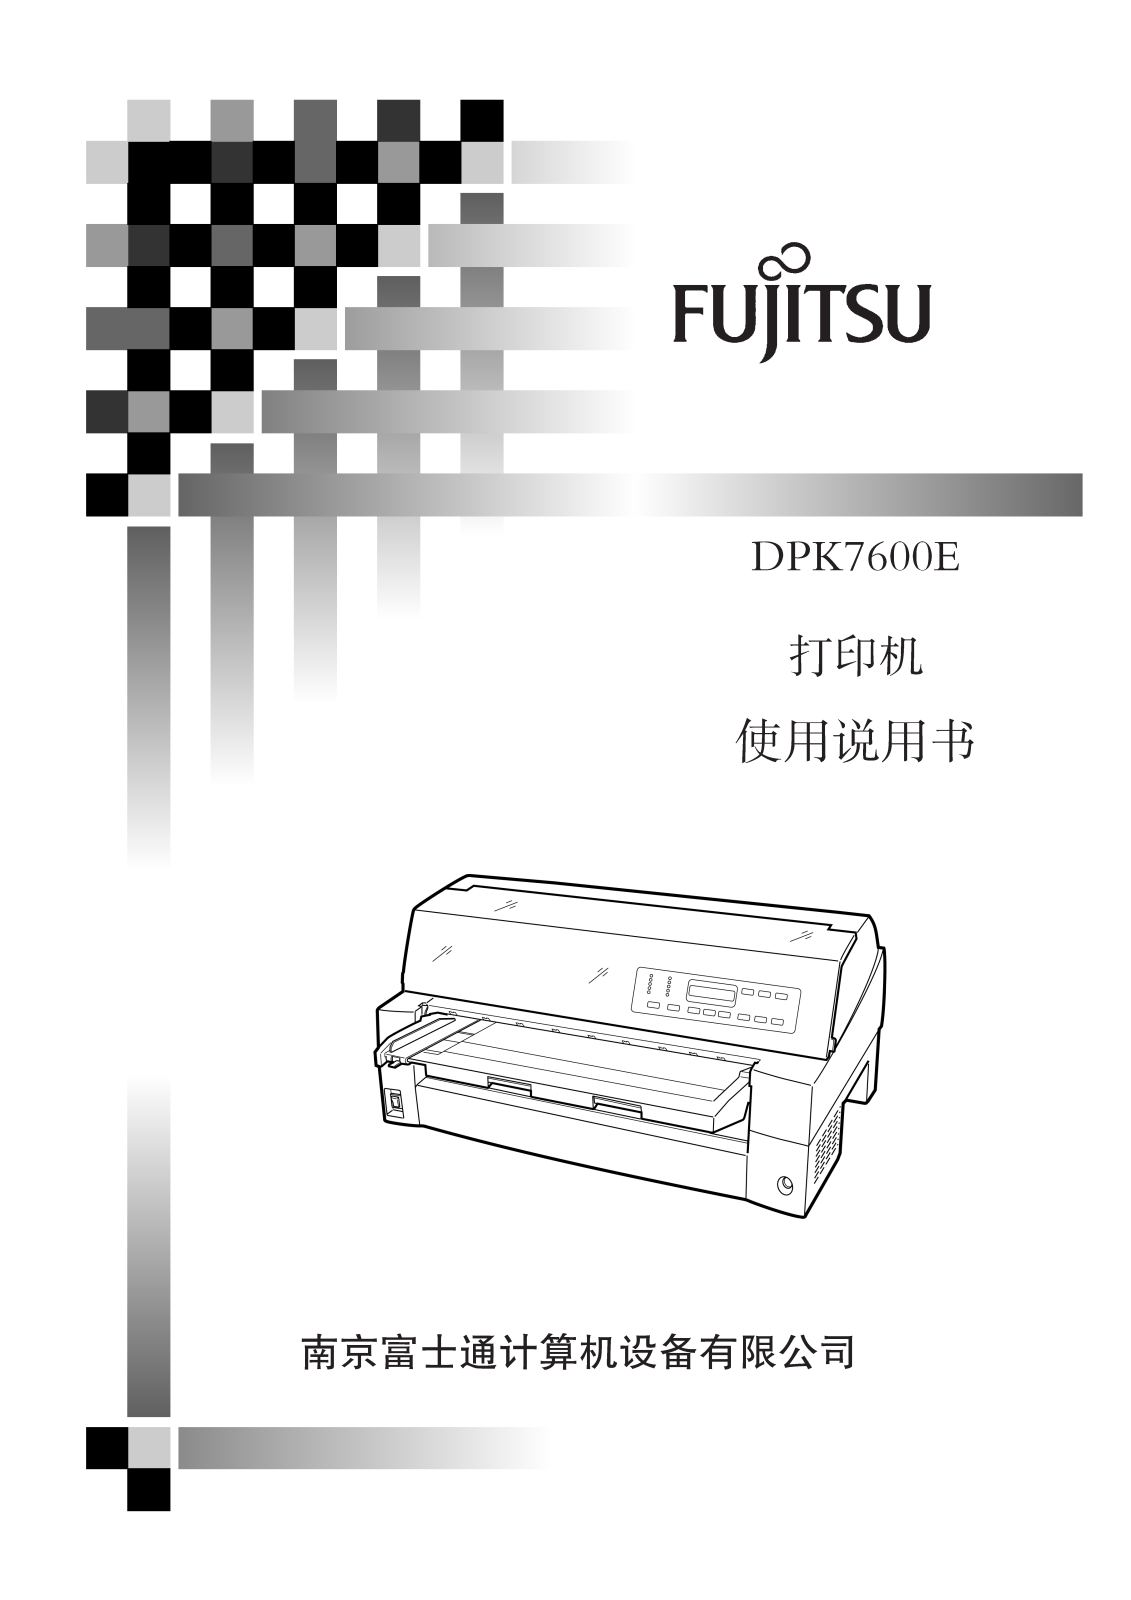 FUJITSU DPK7600E Service Manual